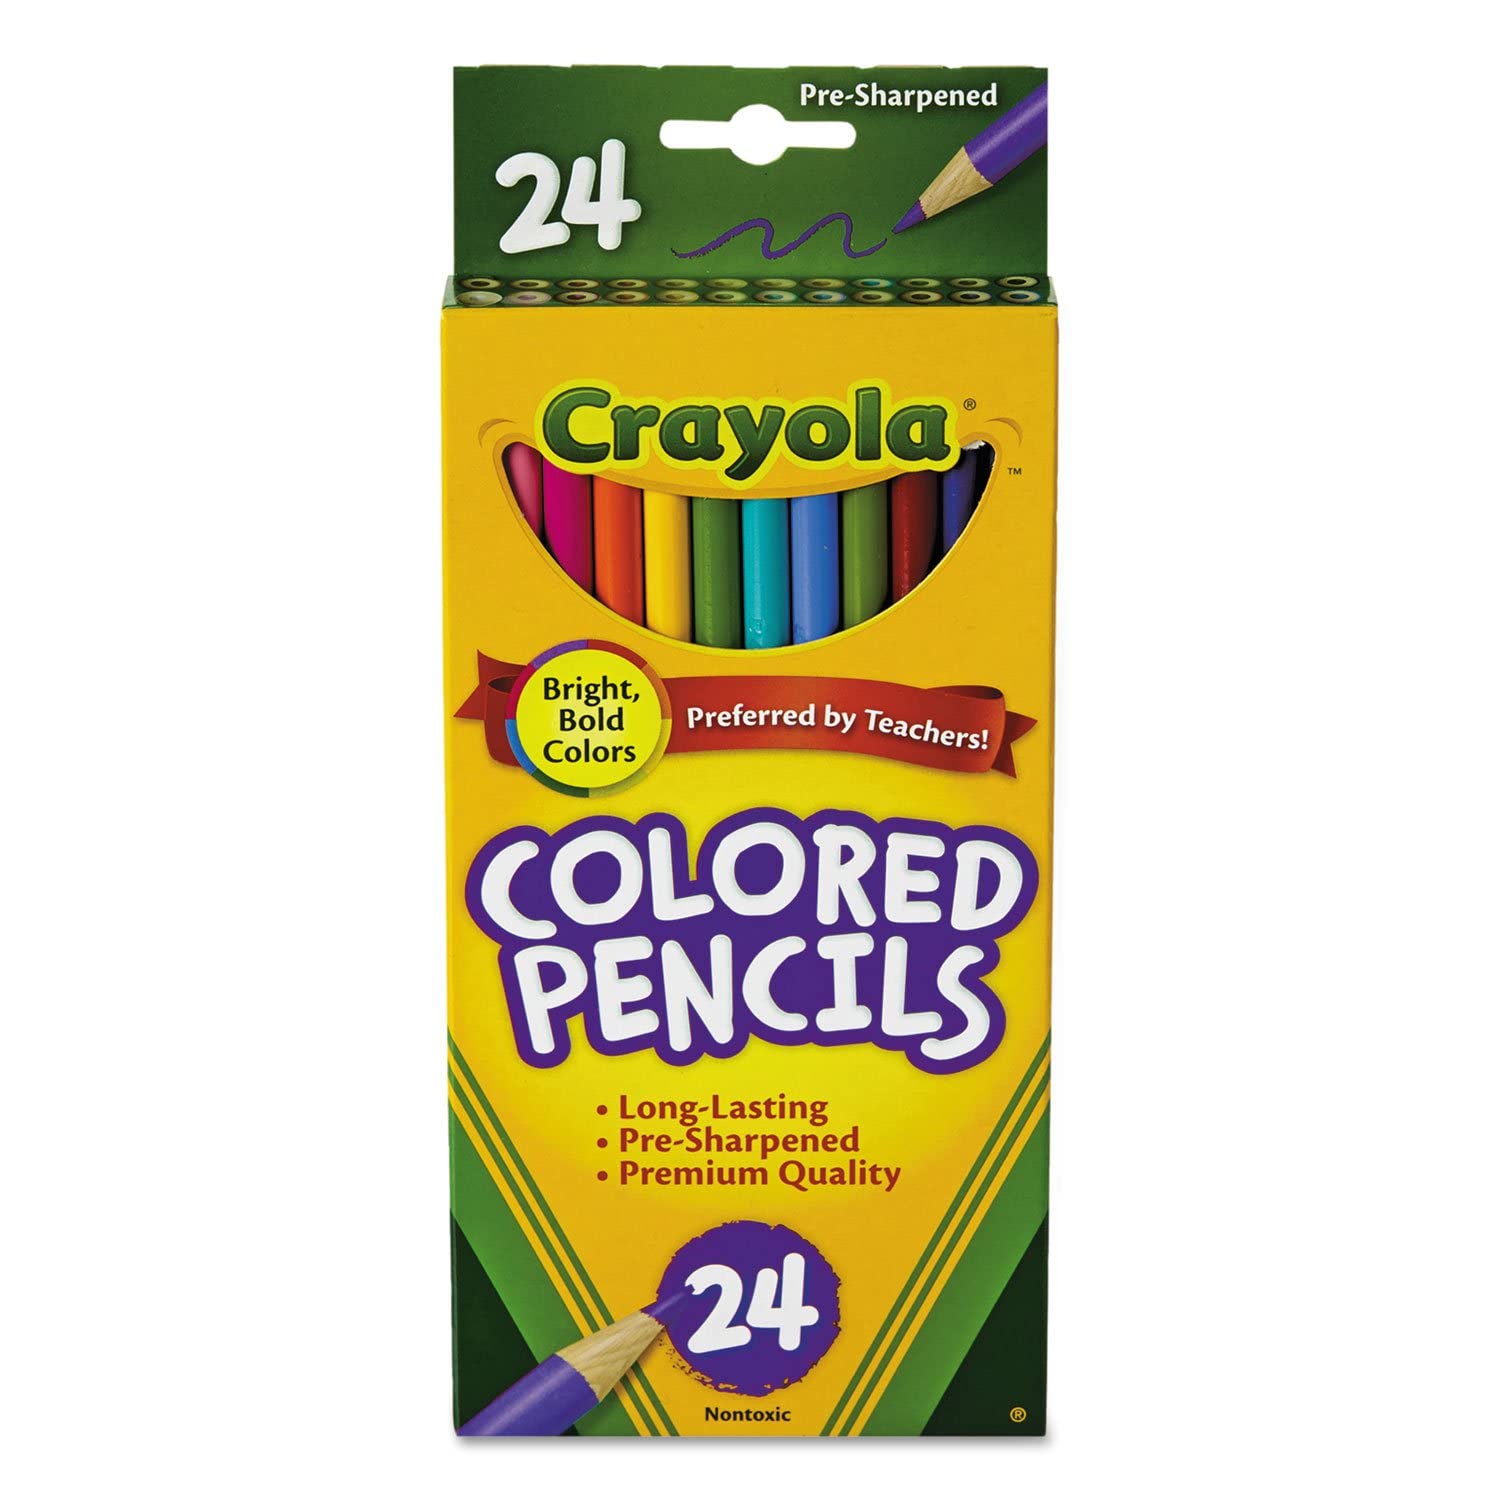 Lápices de colores Crayola con sacapunta Lápices de colores, puntas fuertes y resistentes, no tóxicos.                                                                                                                                                                                                   s 24 piezas                              - CRAYOLA